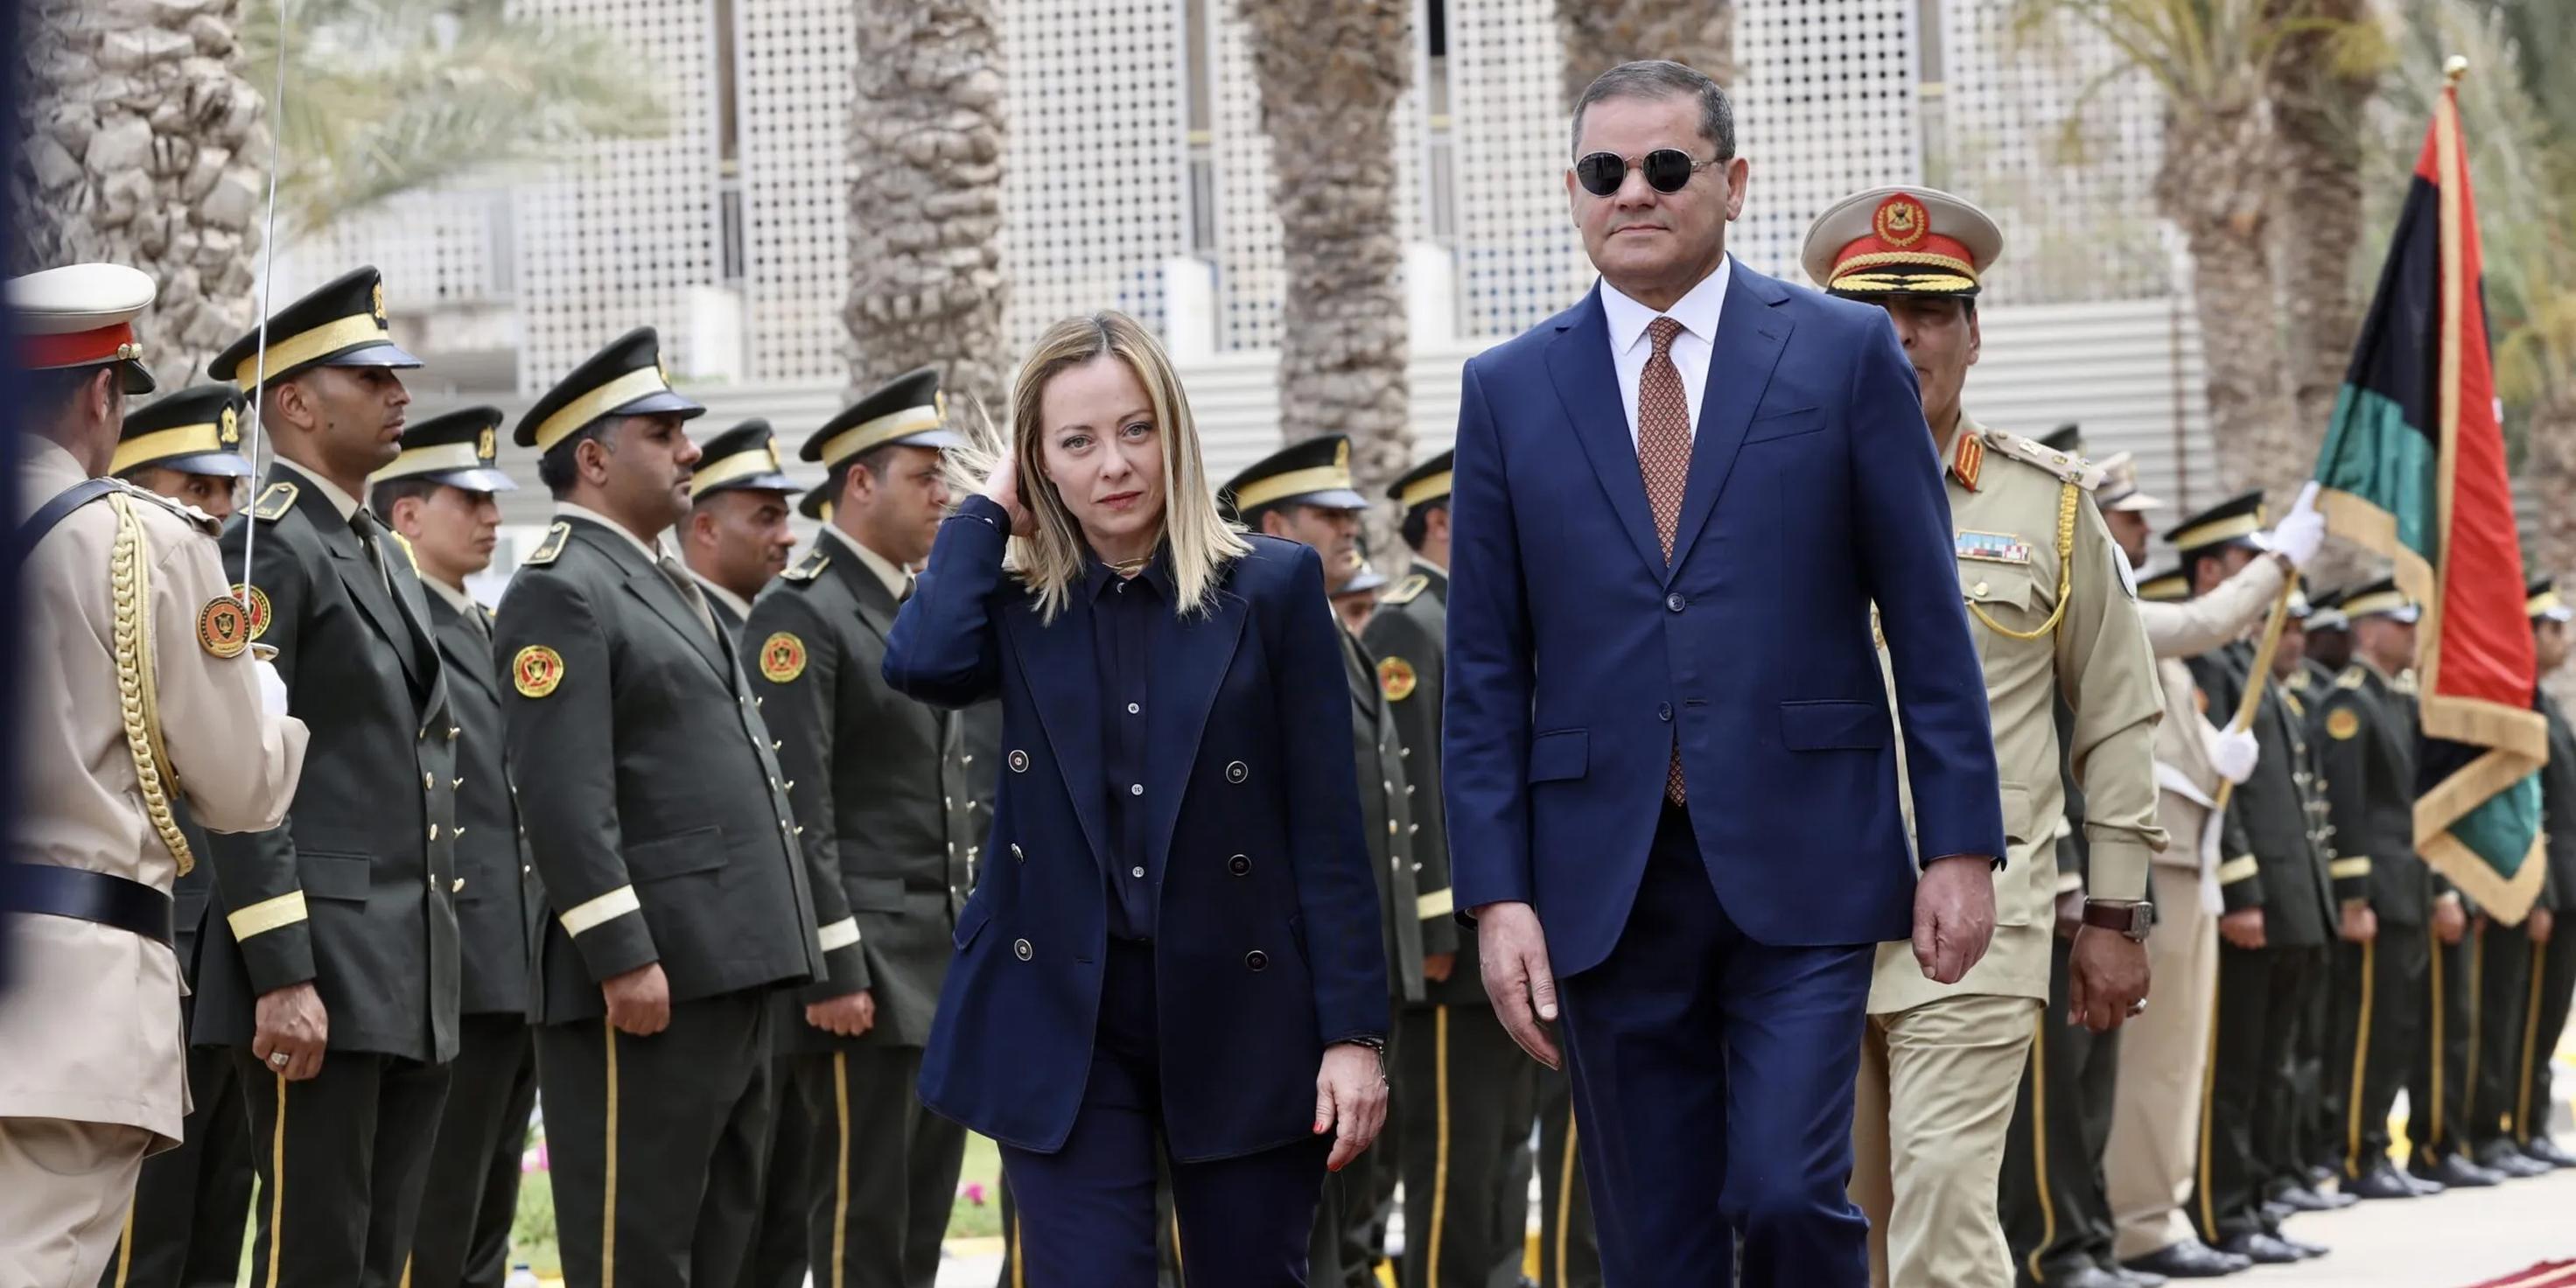 ما دوافع زيارة رئيسة وزراء إيطاليا إلى ليبيا؟